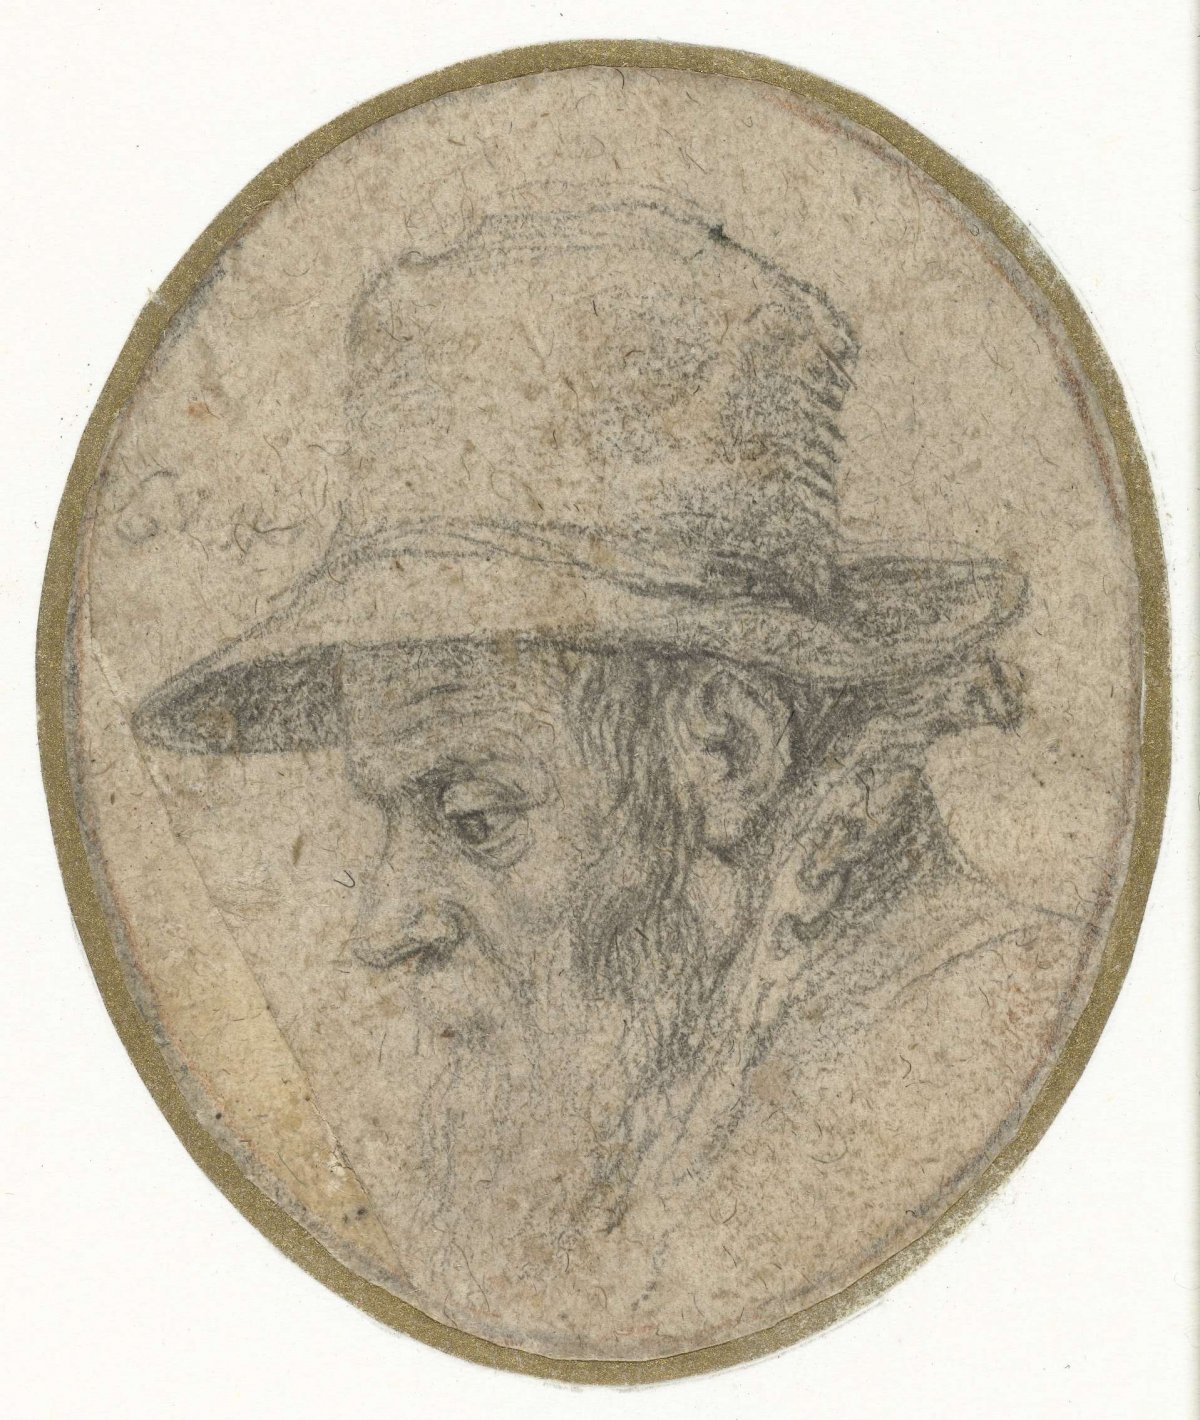 Portrait of middle-aged man wearing a hat, Jacques de Gheyn (II), 1575 - 1625